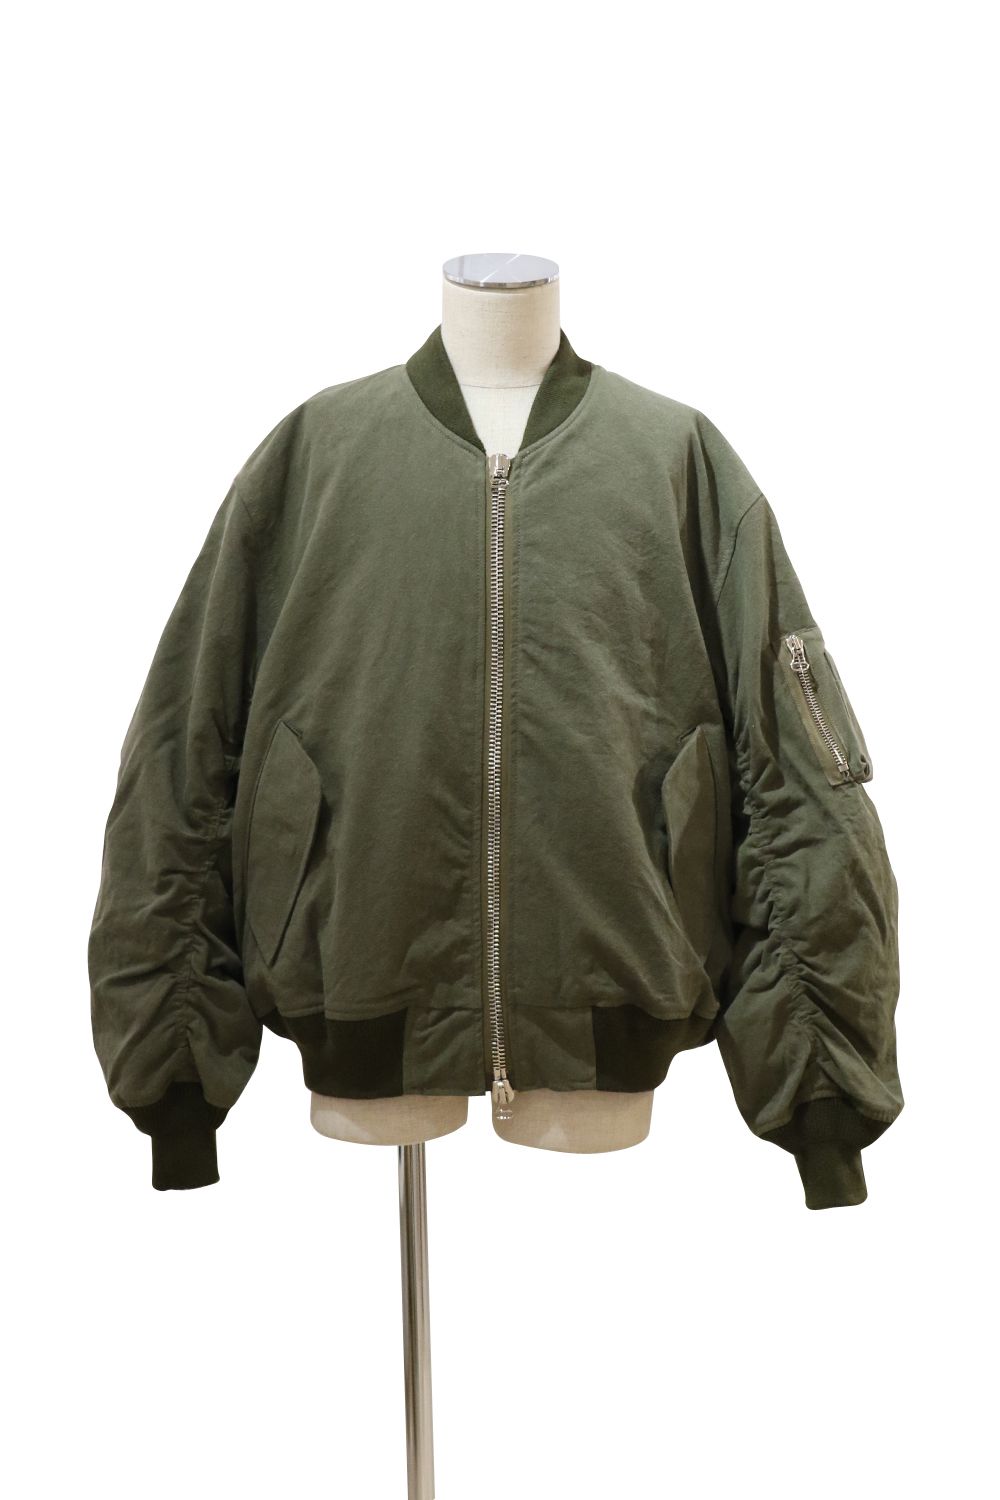 39,000円readymade jesse jacket サイズ4